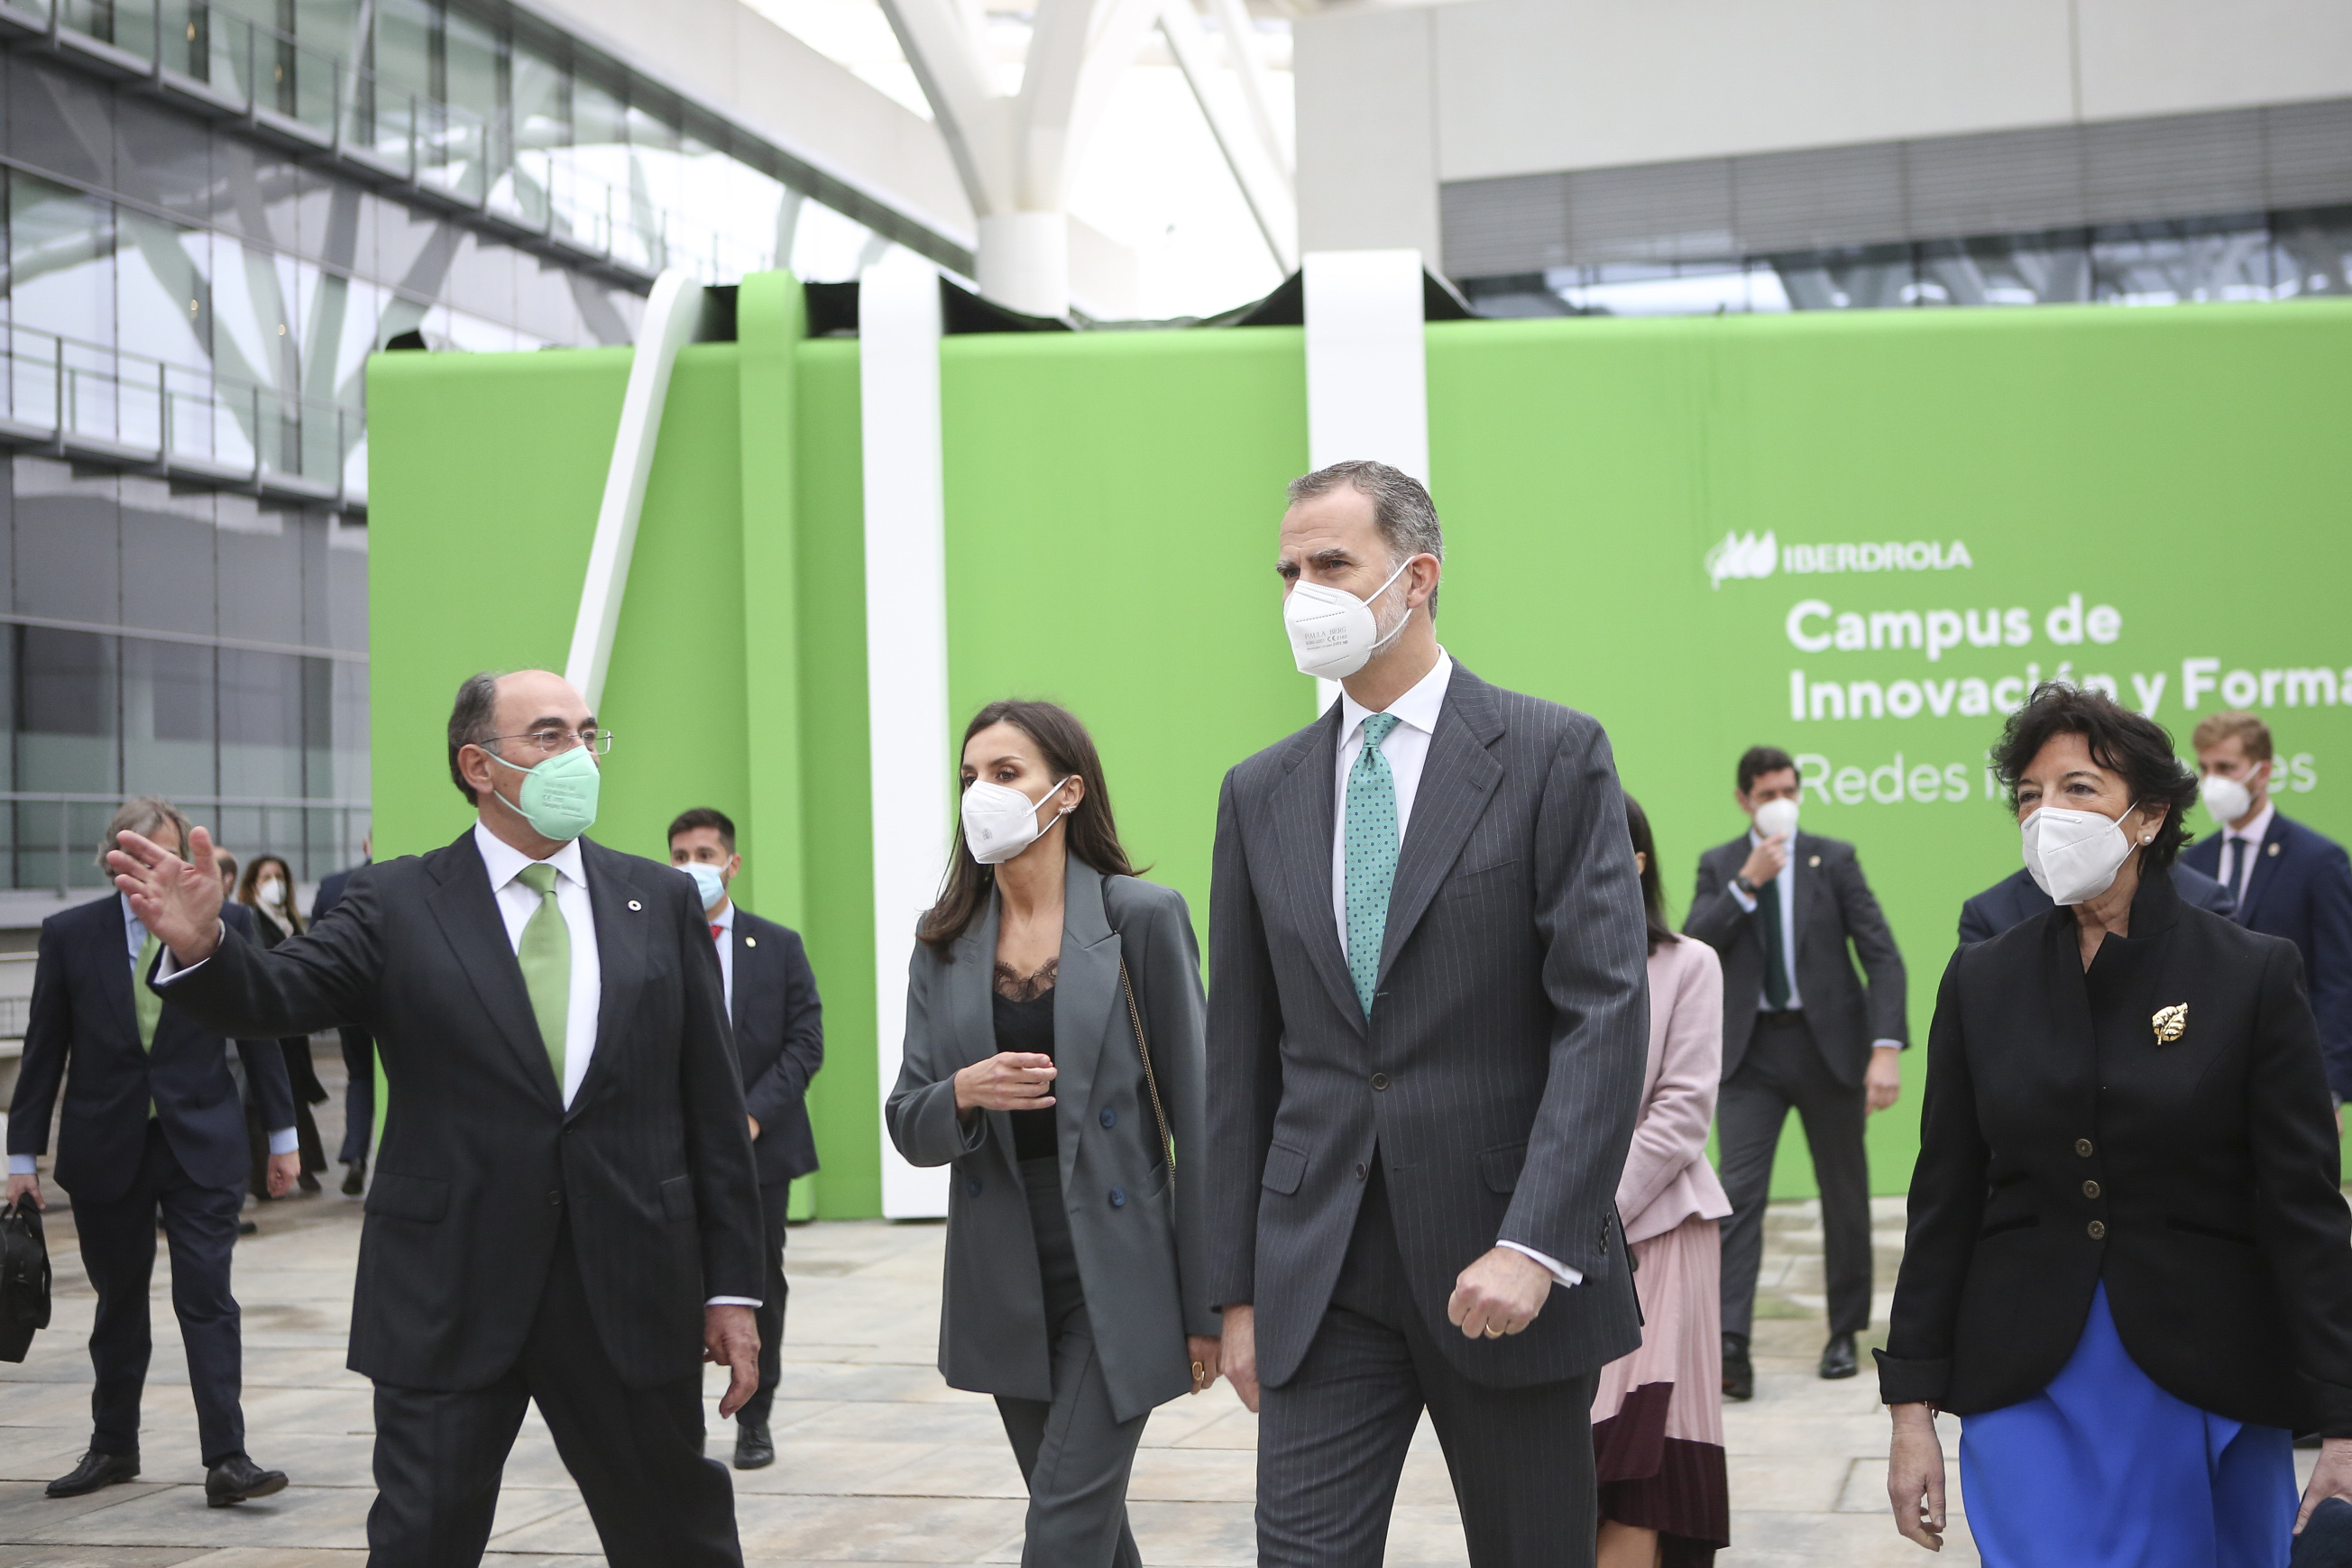 SSMM los Reyes, acompañados de Ignacio Galán, visitan el Campus de Innovación y Formación de Iberdrola